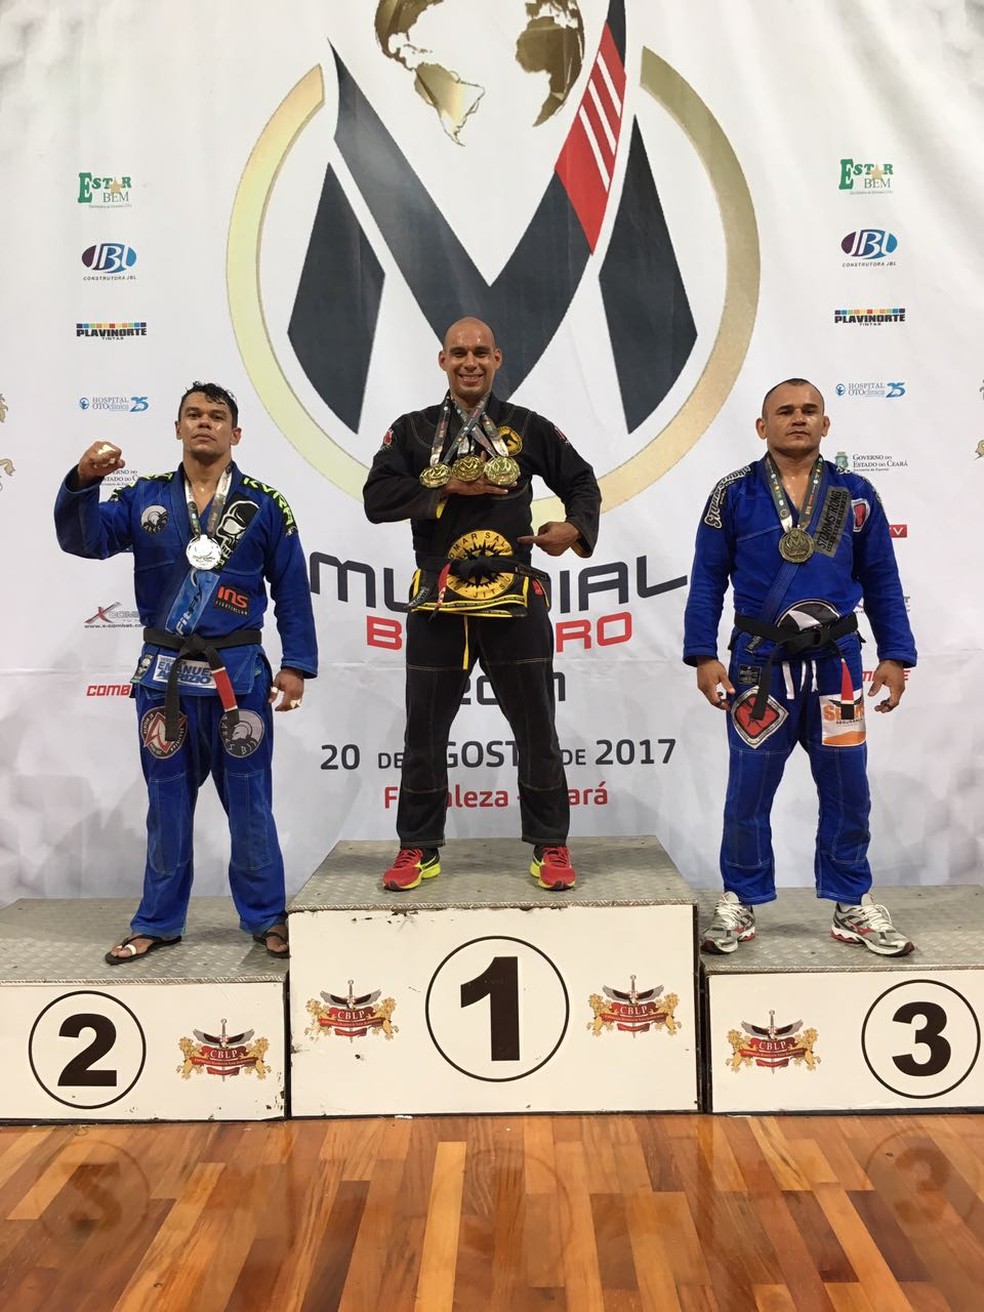 O absoluto e resultados do Mundial de Jiu-Jitsu 2017